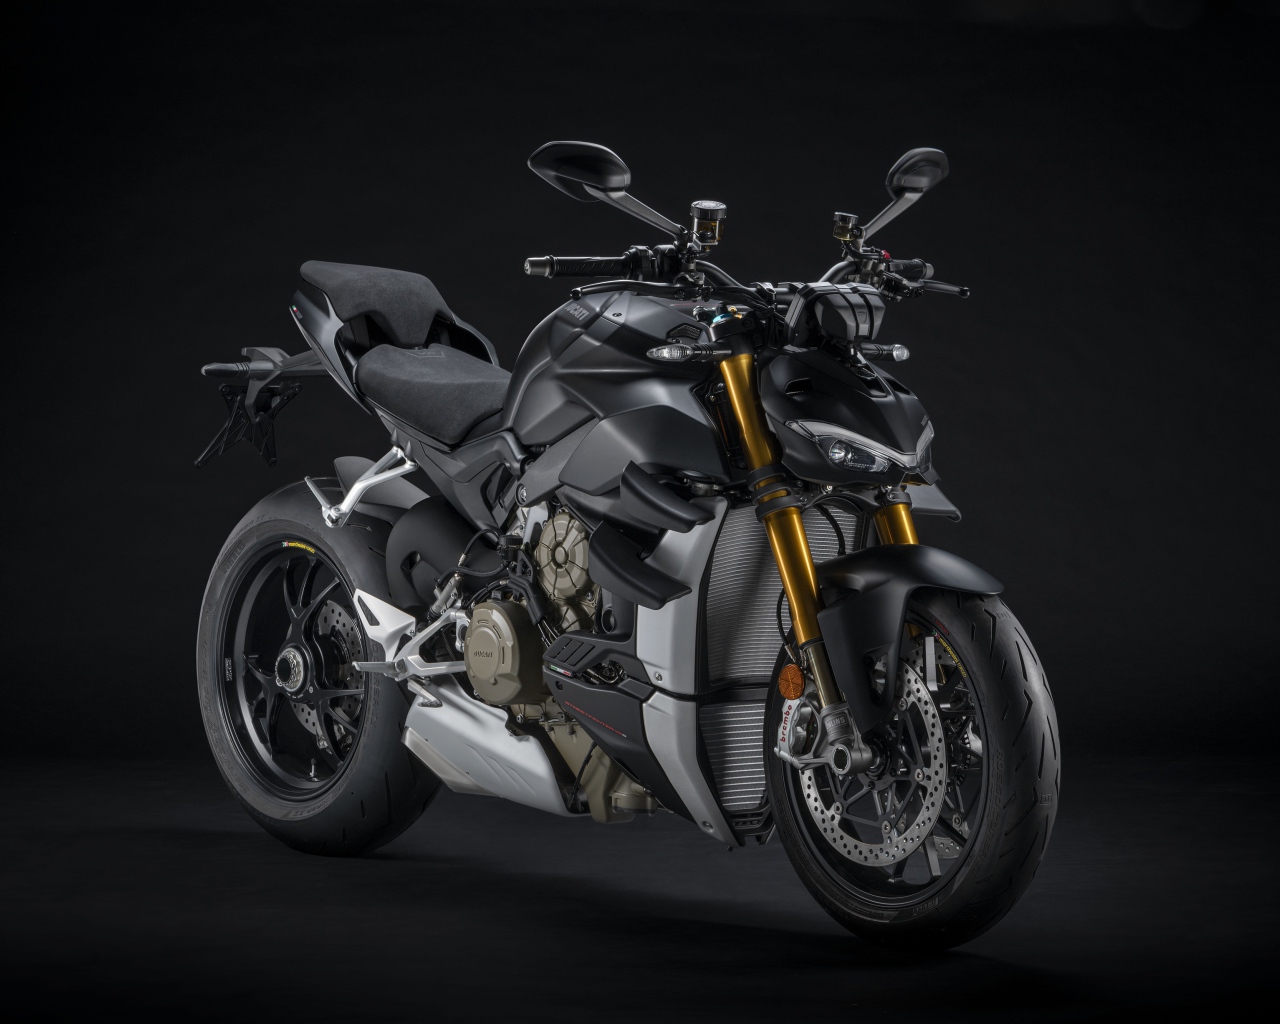 Черный мотоцикл Ducati V4 Streetfighter, 2021 года на сером фоне